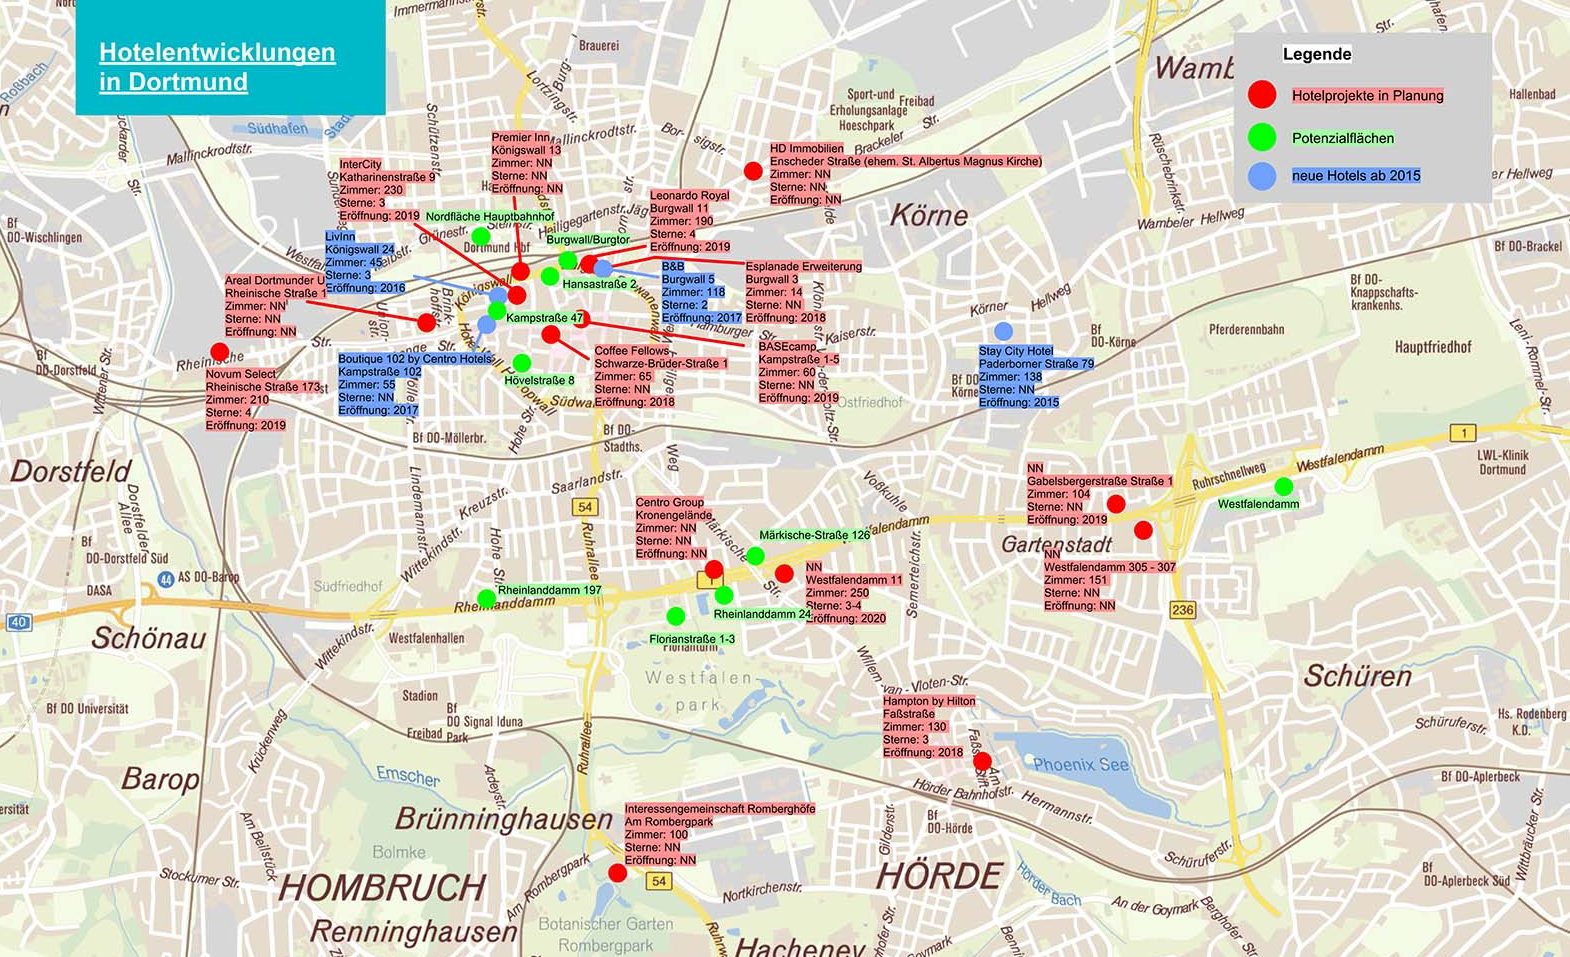 Die aktuellen Hotelentwicklungen und Potenziale auf einen Blick. Karte: Wirtschaftsförderung Dortmund